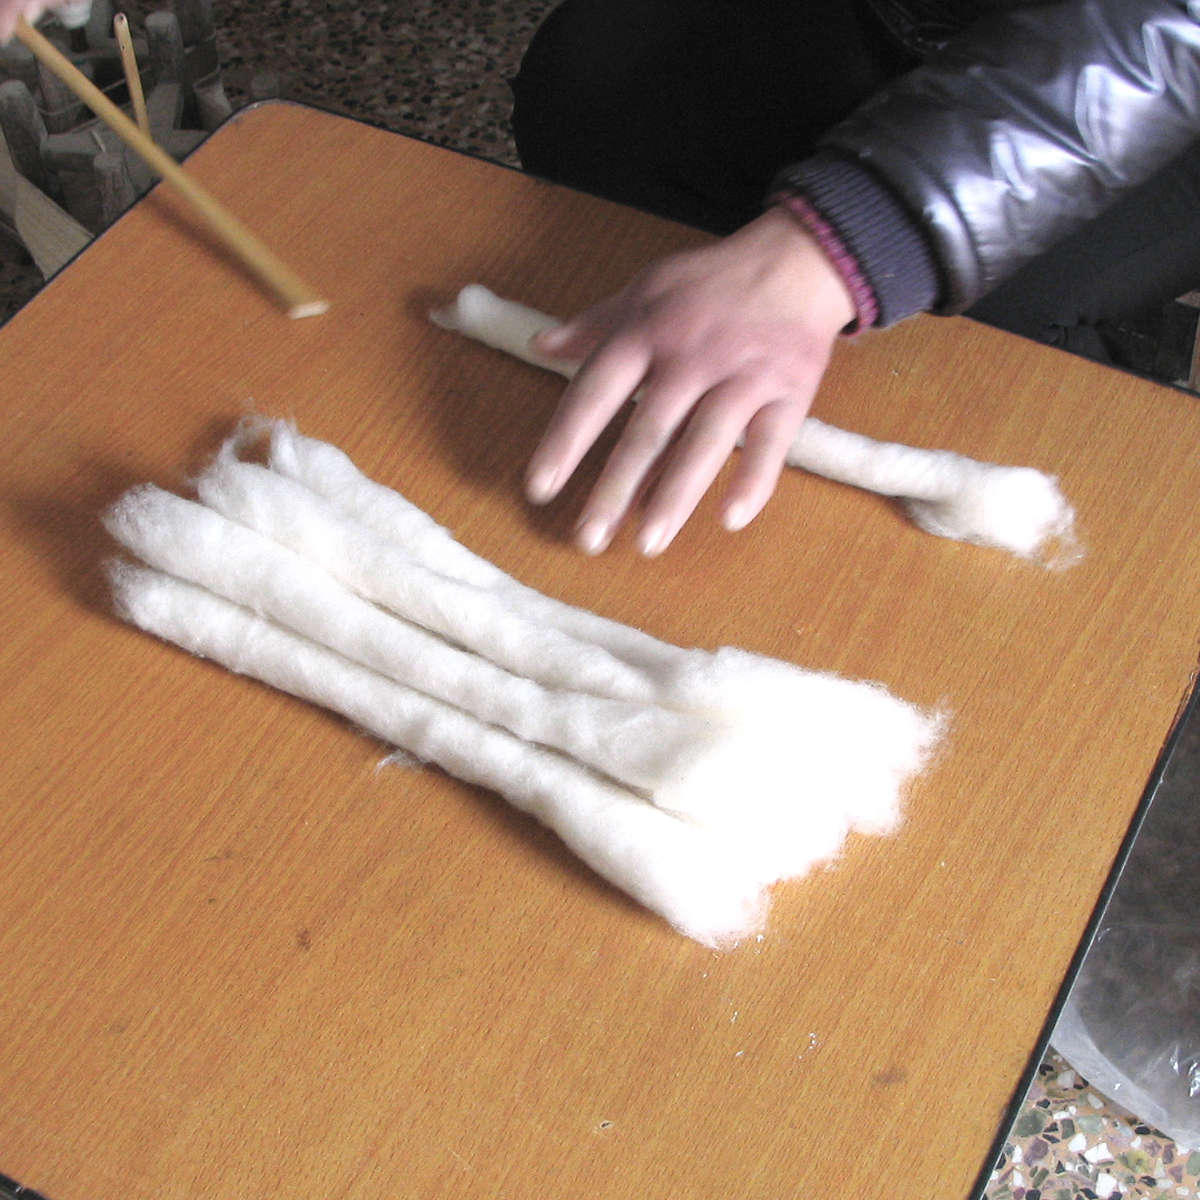 綿のかたまり「じんき」の作成。紡ぐための準備です。